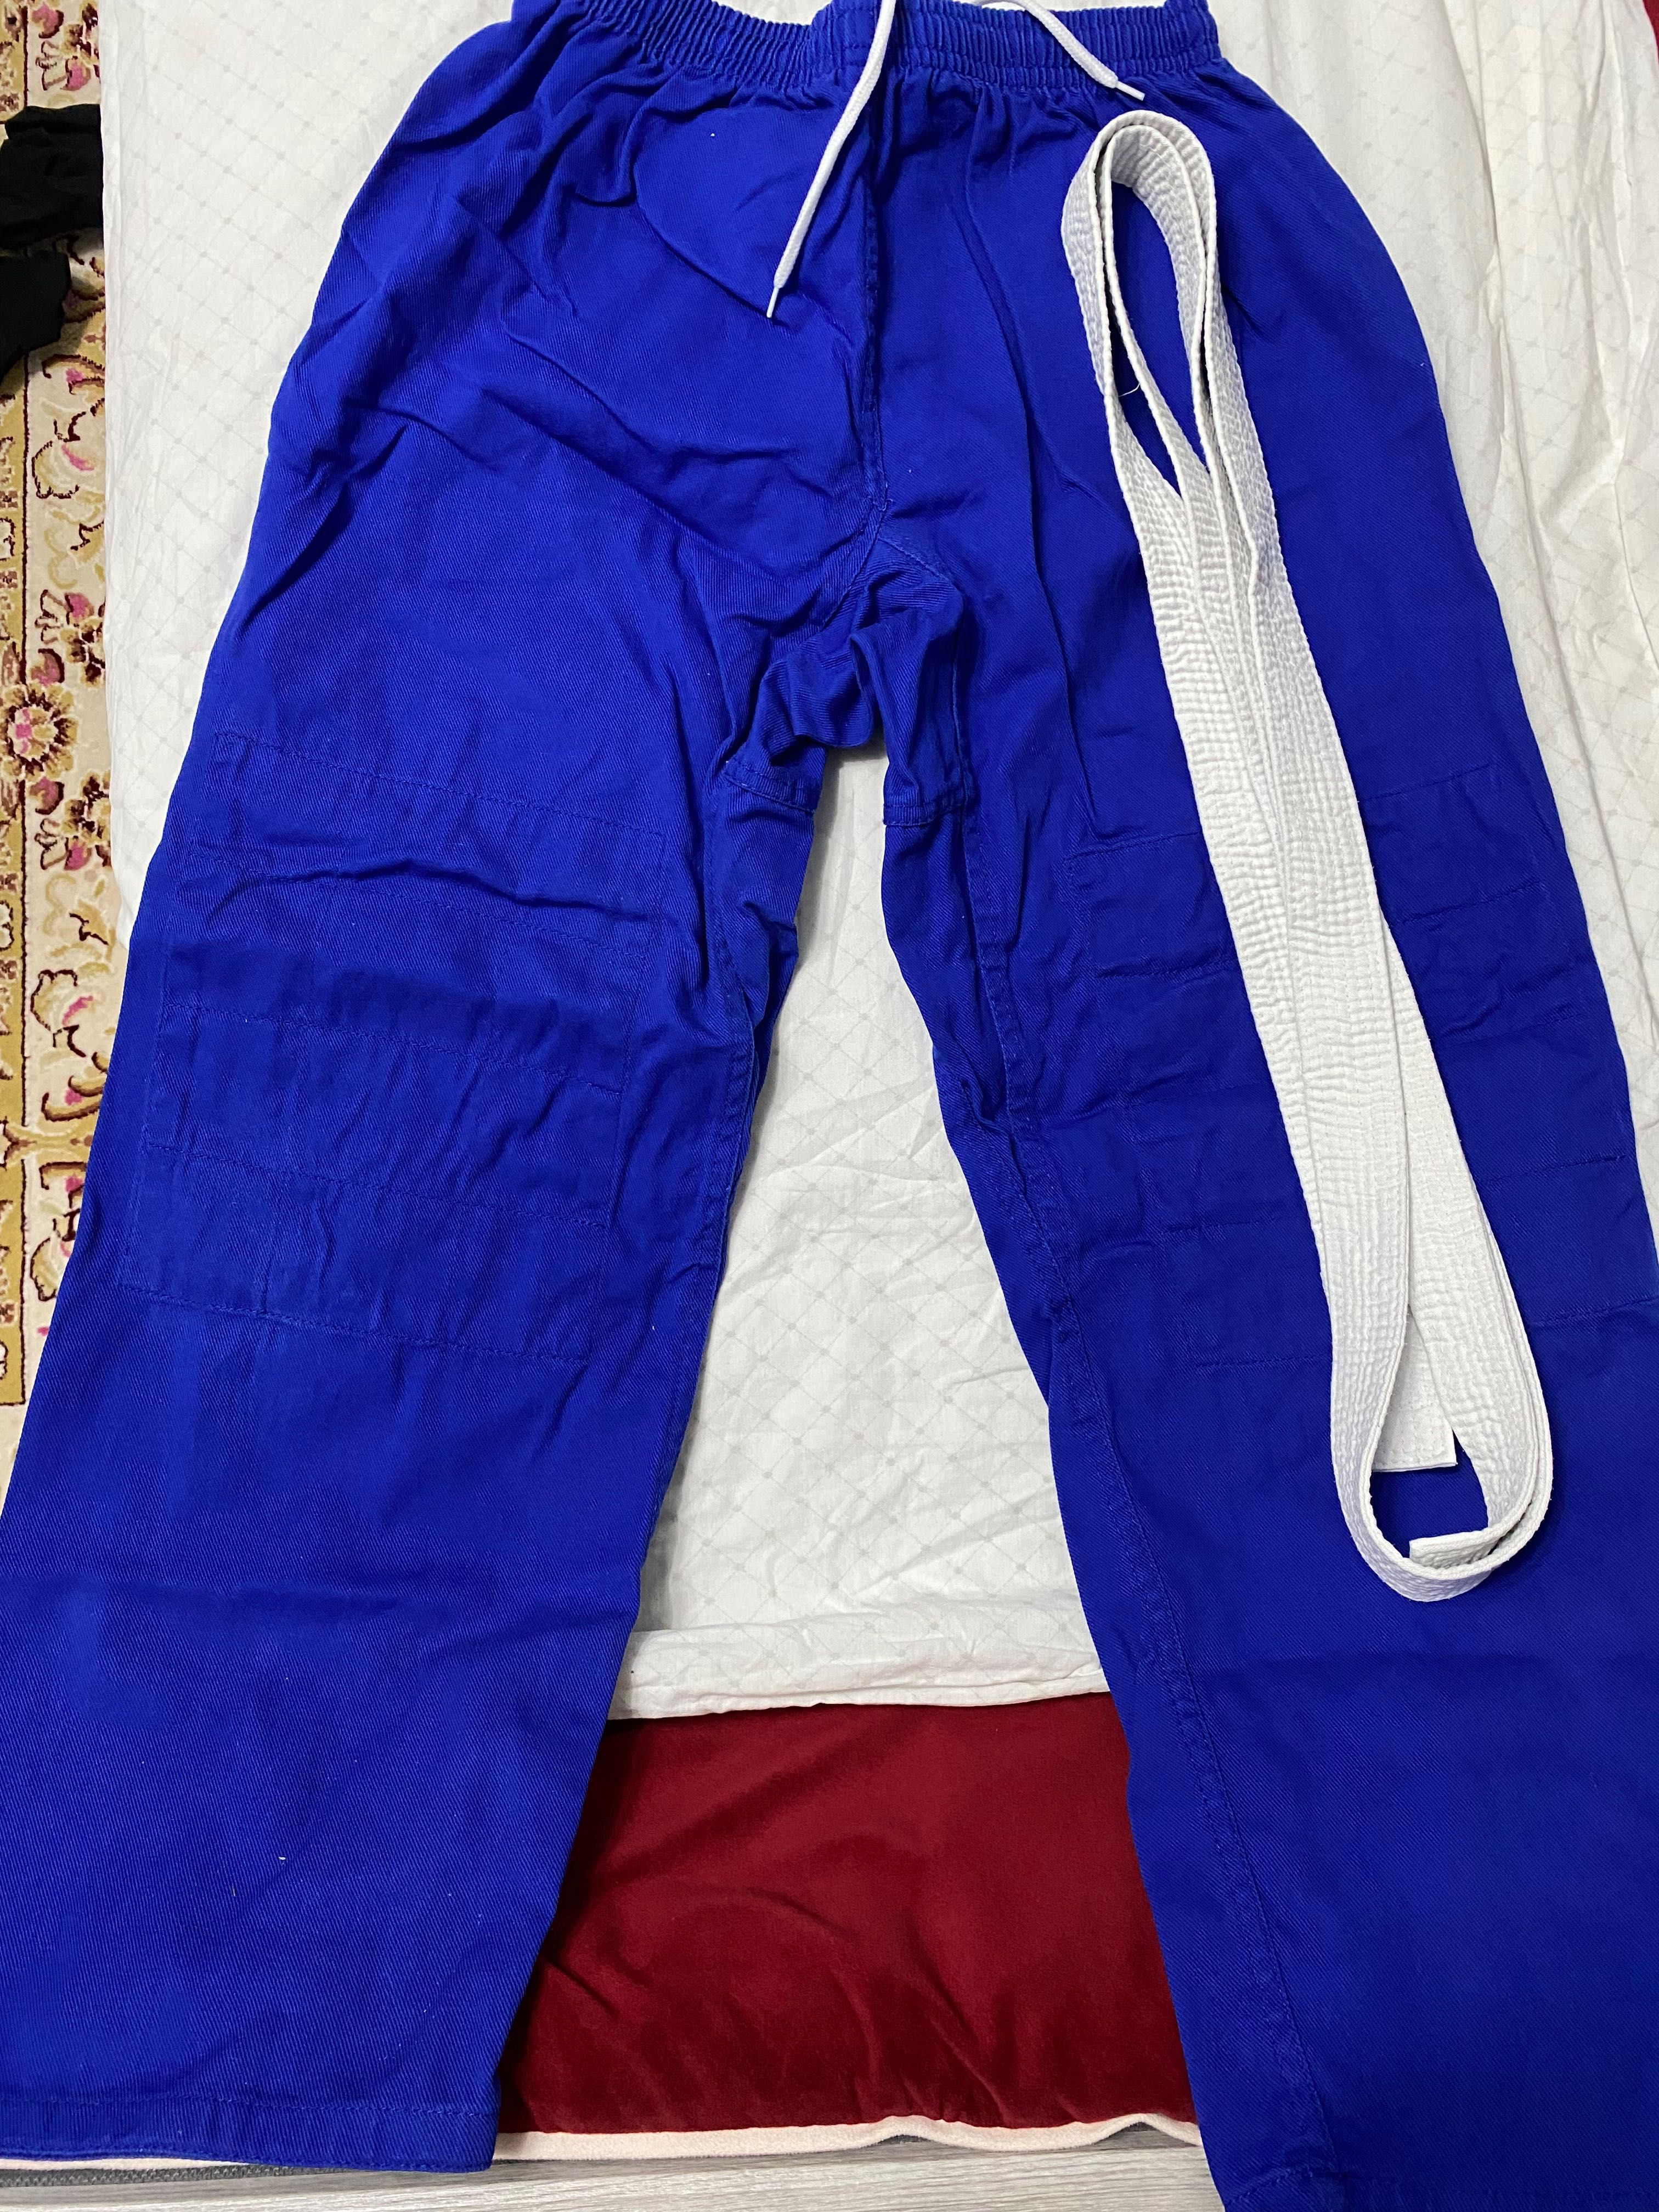 Кимоно для дзюдо синяя 50 размера